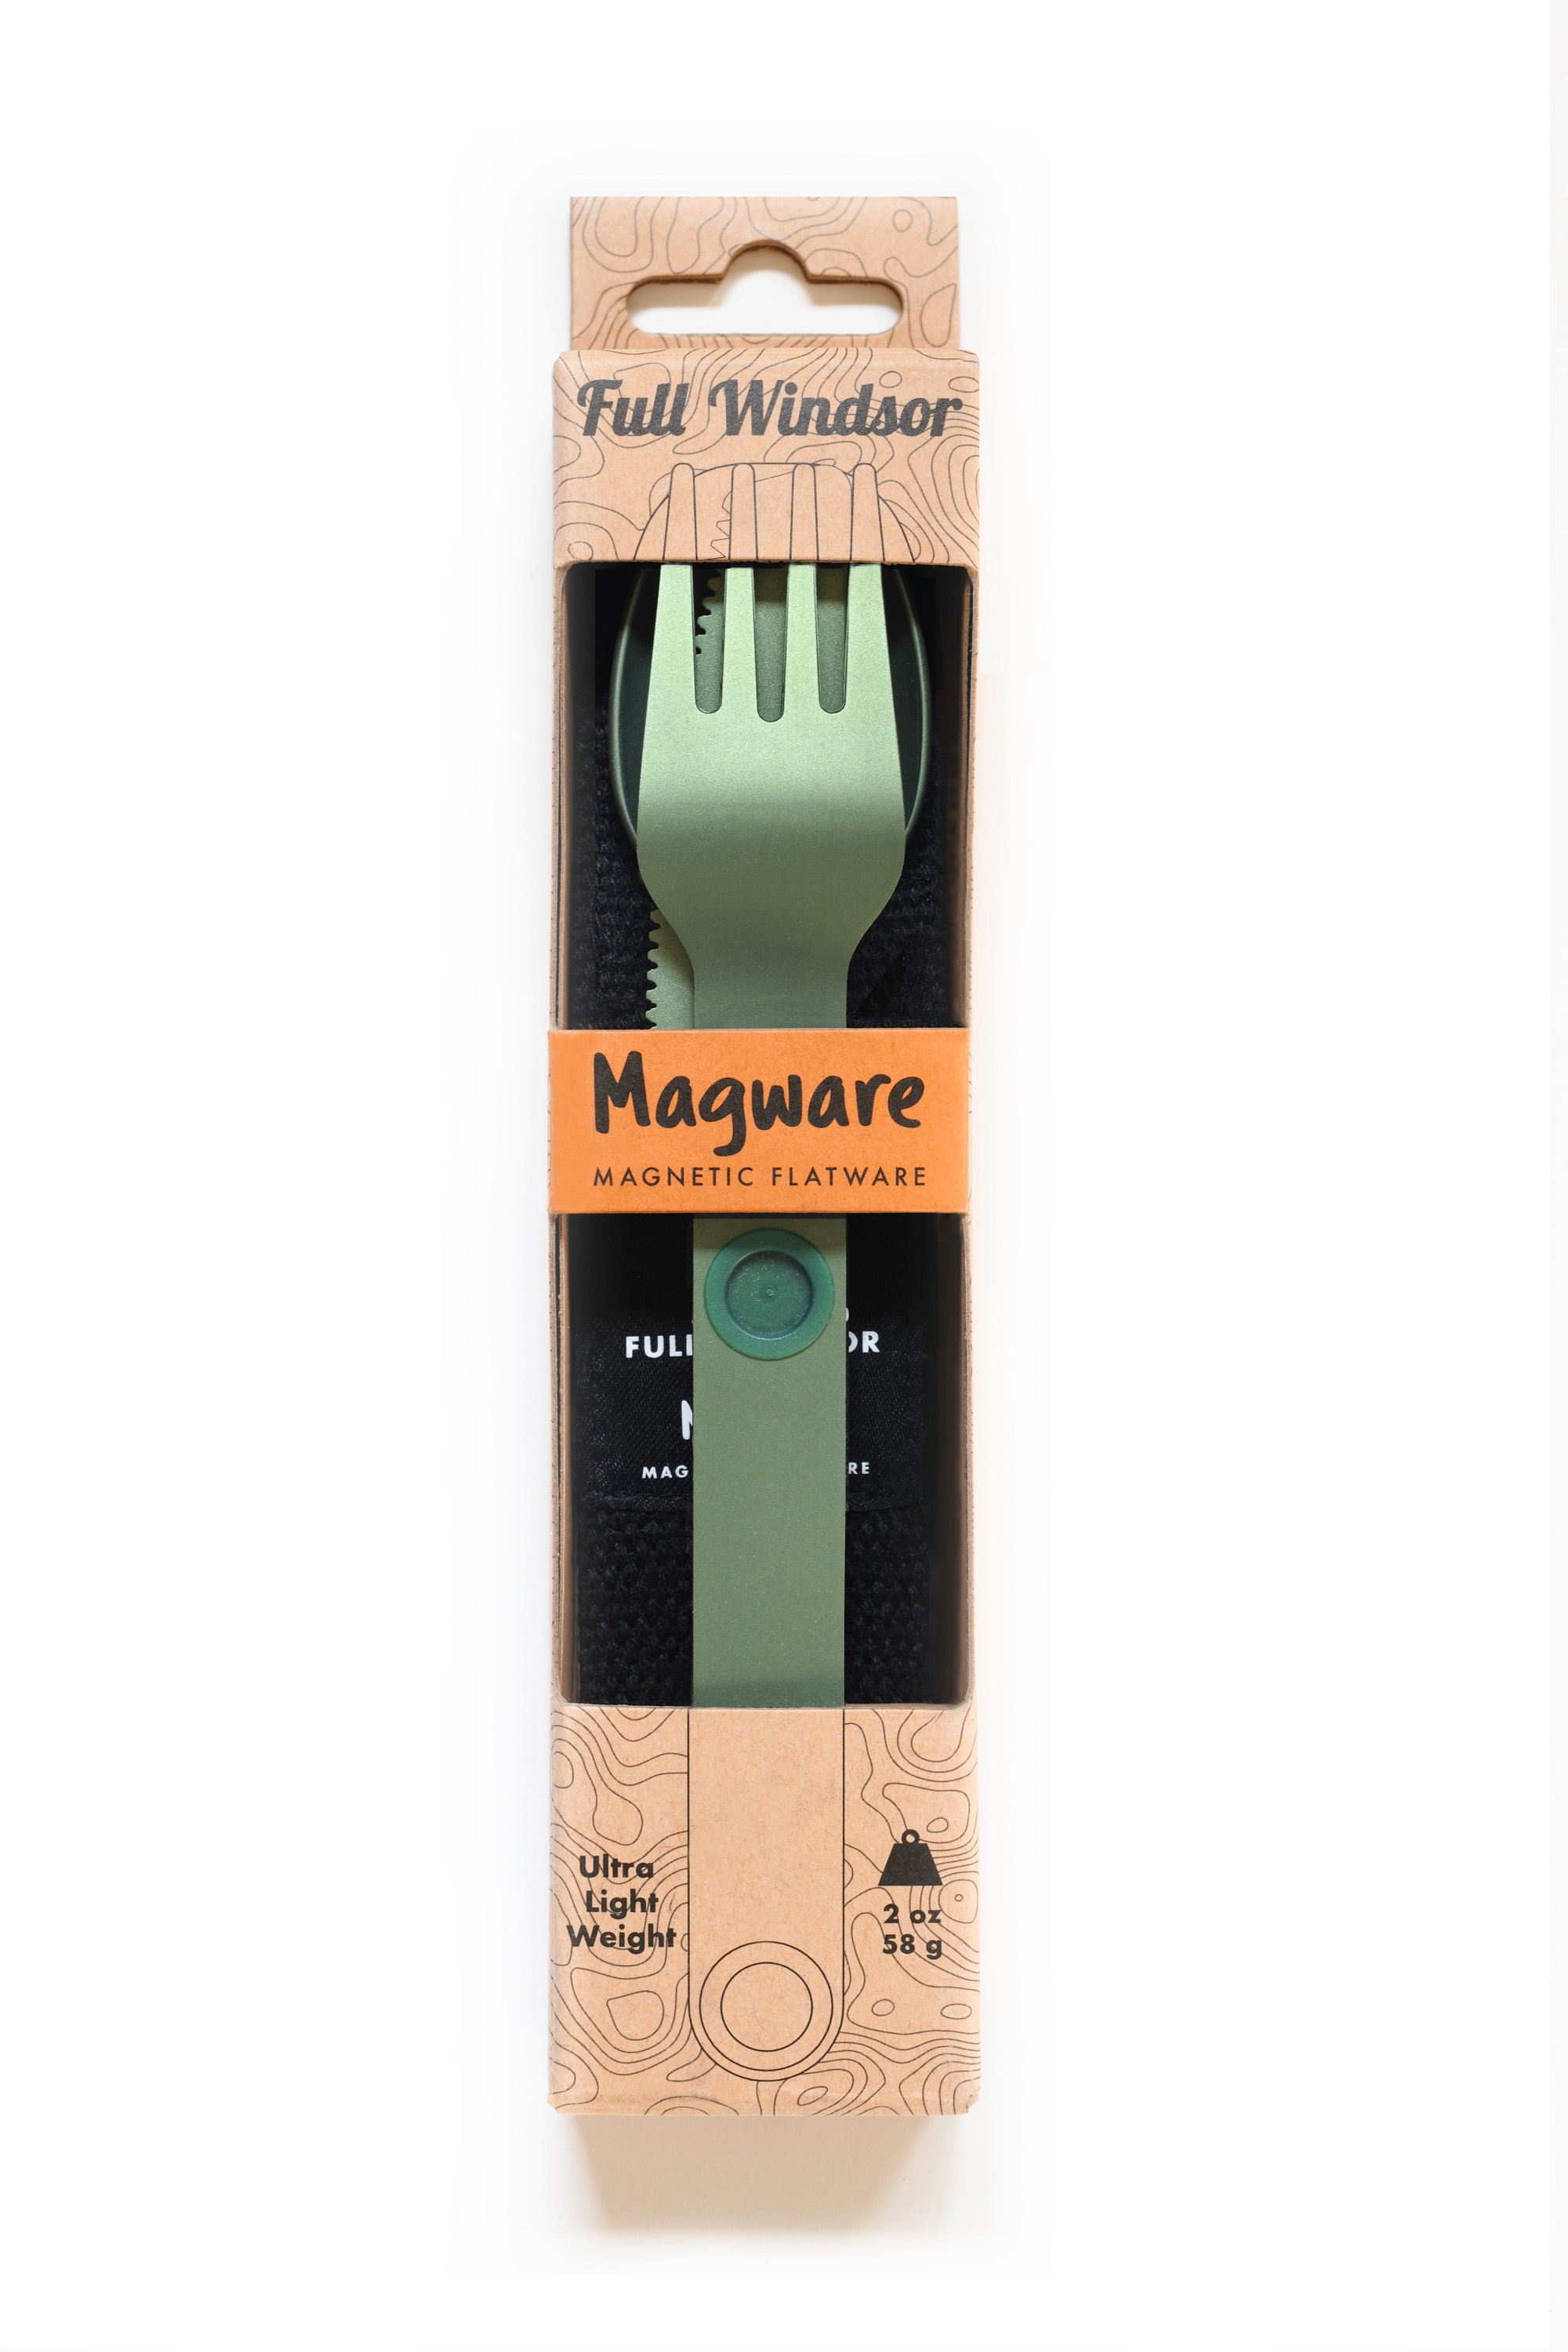 Full-Windsor Magware (green)